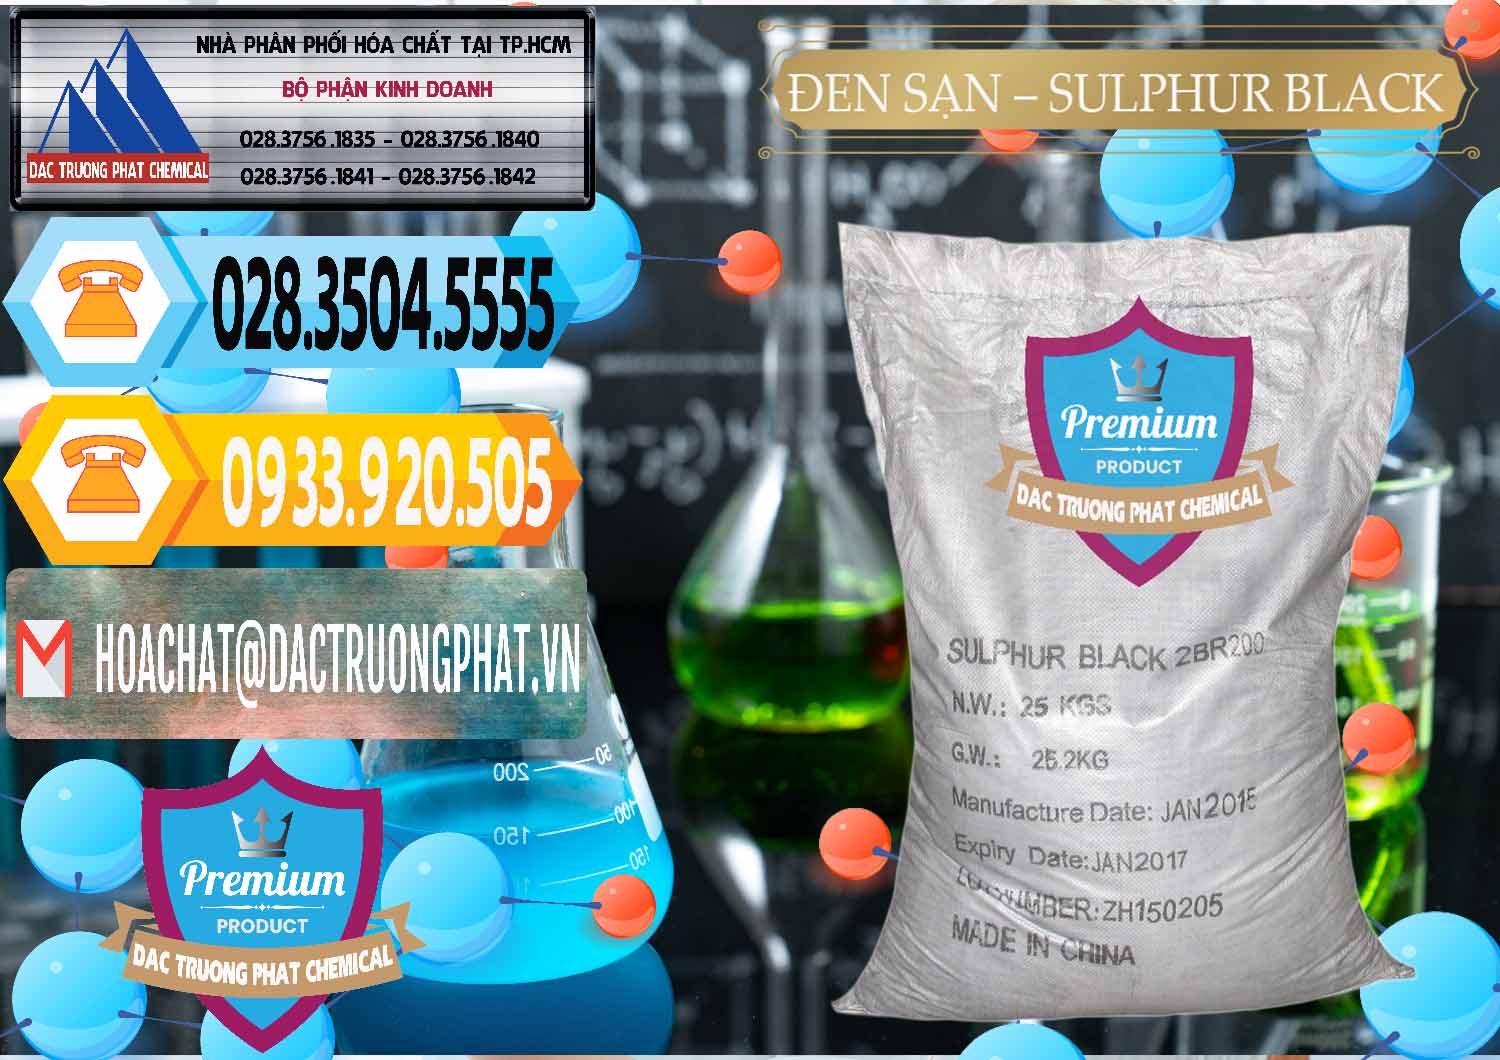 Cty chuyên cung ứng và bán Đen Sạn – Sulphur Black Trung Quốc China - 0062 - Cung cấp và phân phối hóa chất tại TP.HCM - hoachattayrua.net